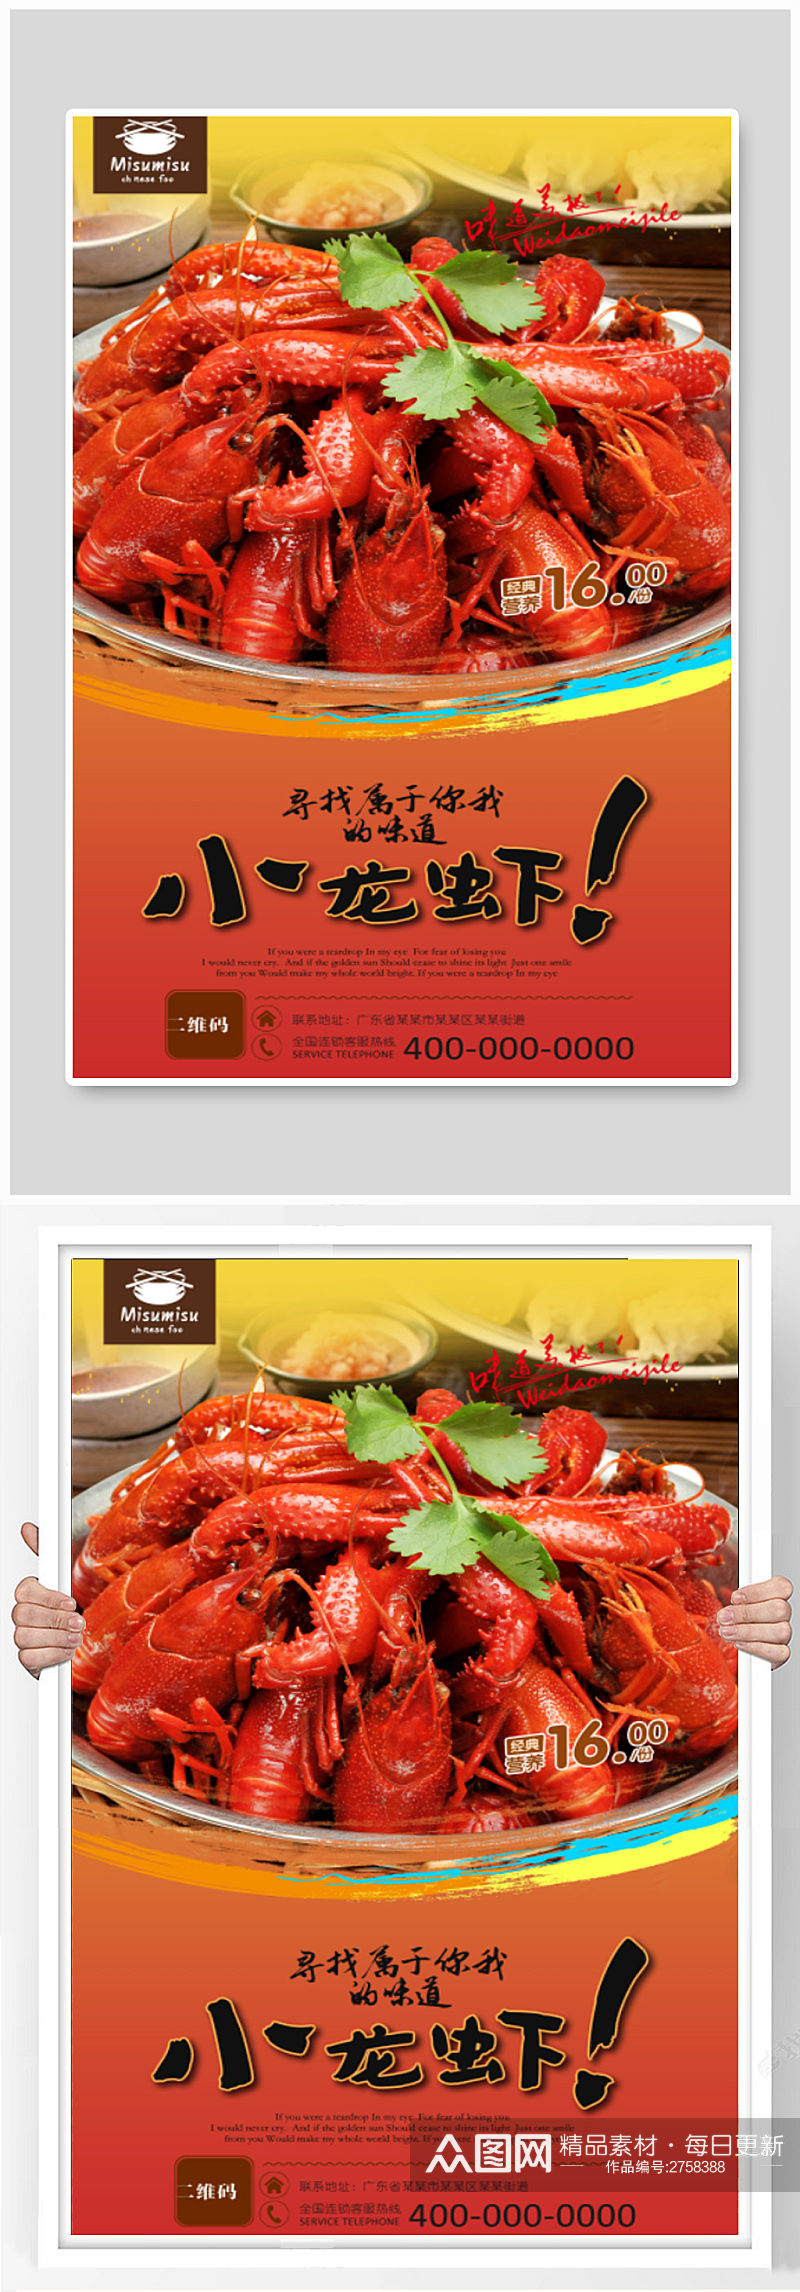 小龙虾美食海报设计素材